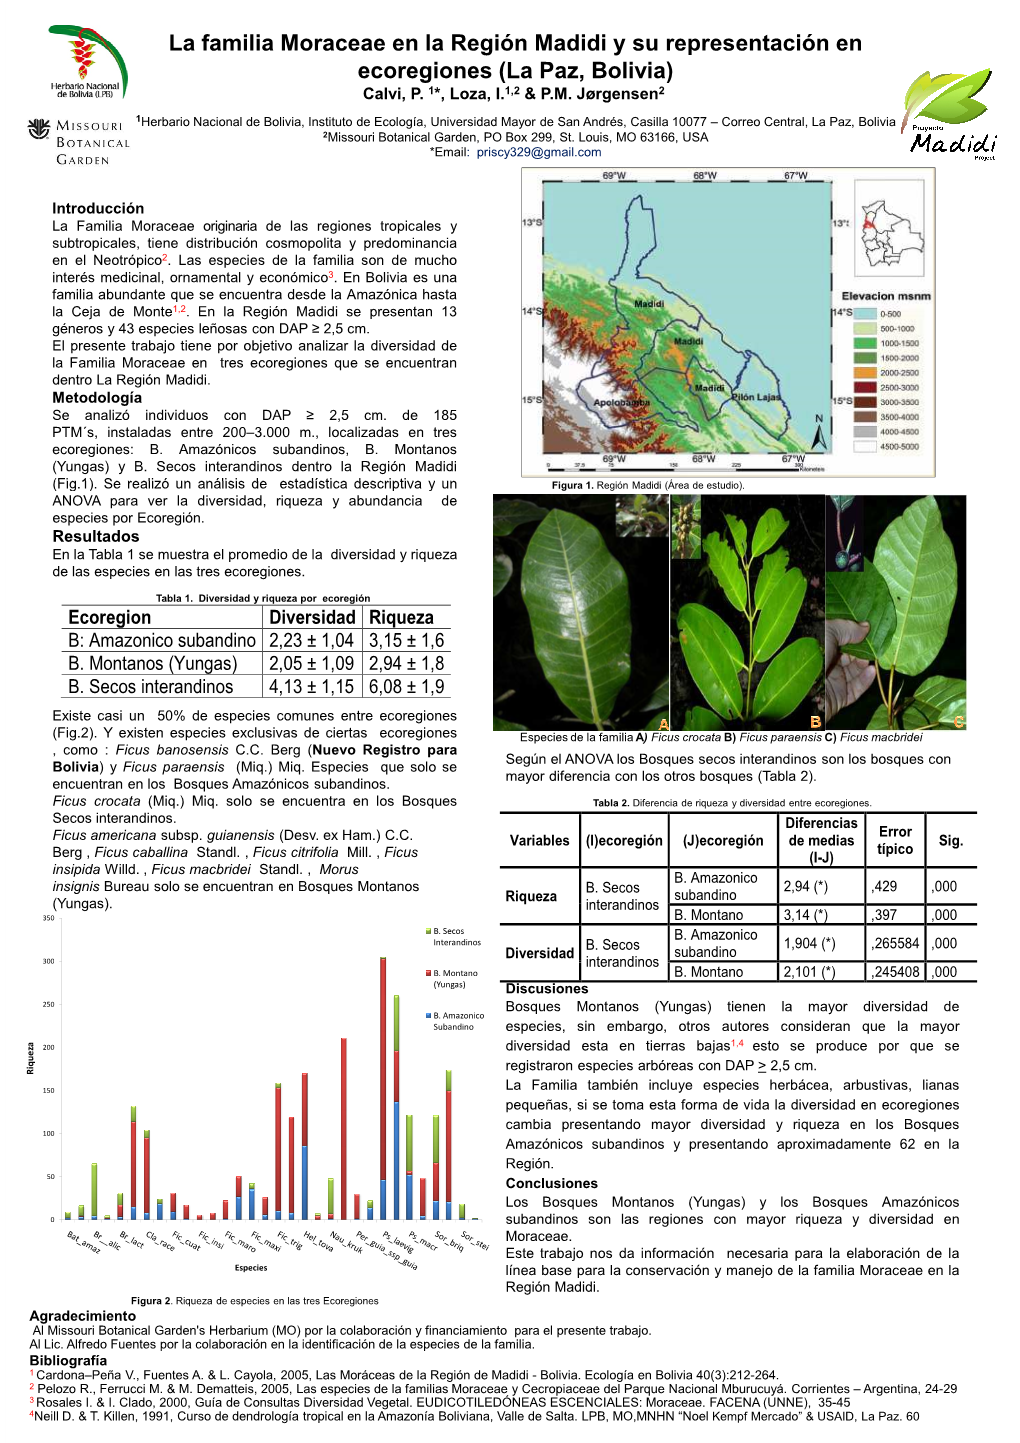 La Familia Moraceae En La Región Madidi Y Su Representación En Ecoregiones (La Paz, Bolivia) Calvi, P